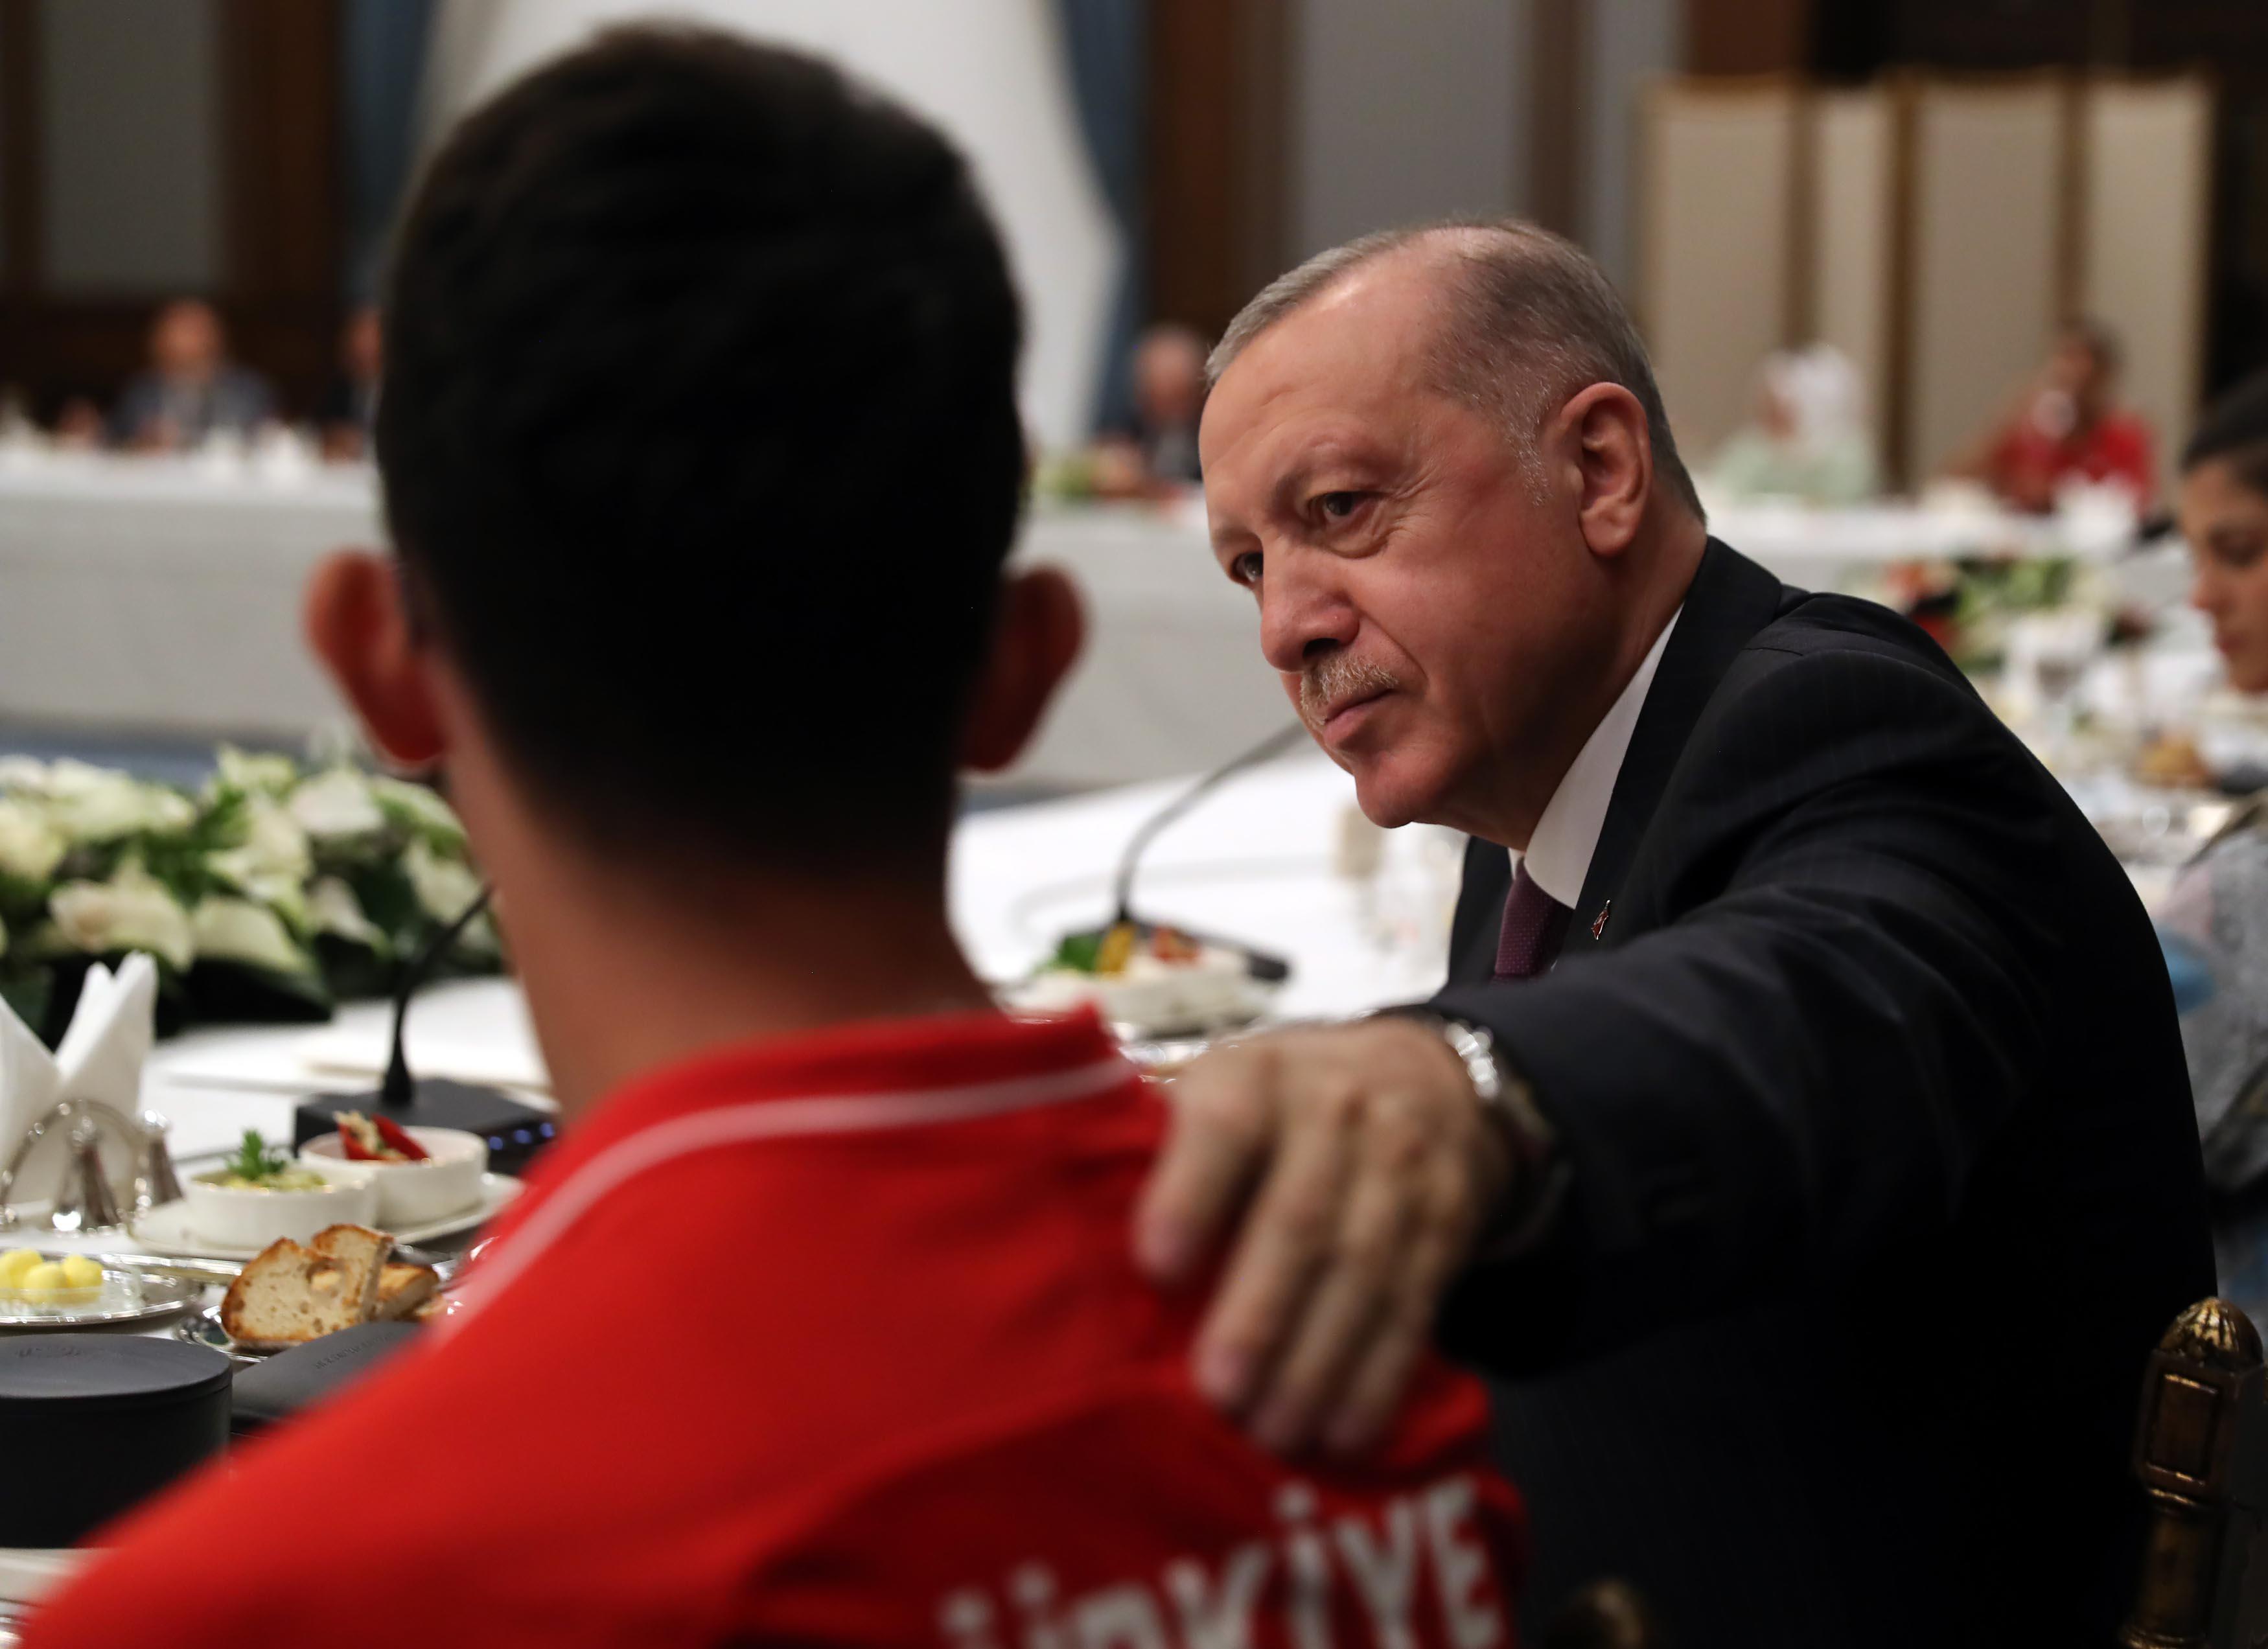 Cumhurbaşkanı Erdoğan: Spor dallarında ülkemizi çok daha iyi bir konuma taşımayı hedefliyoruz